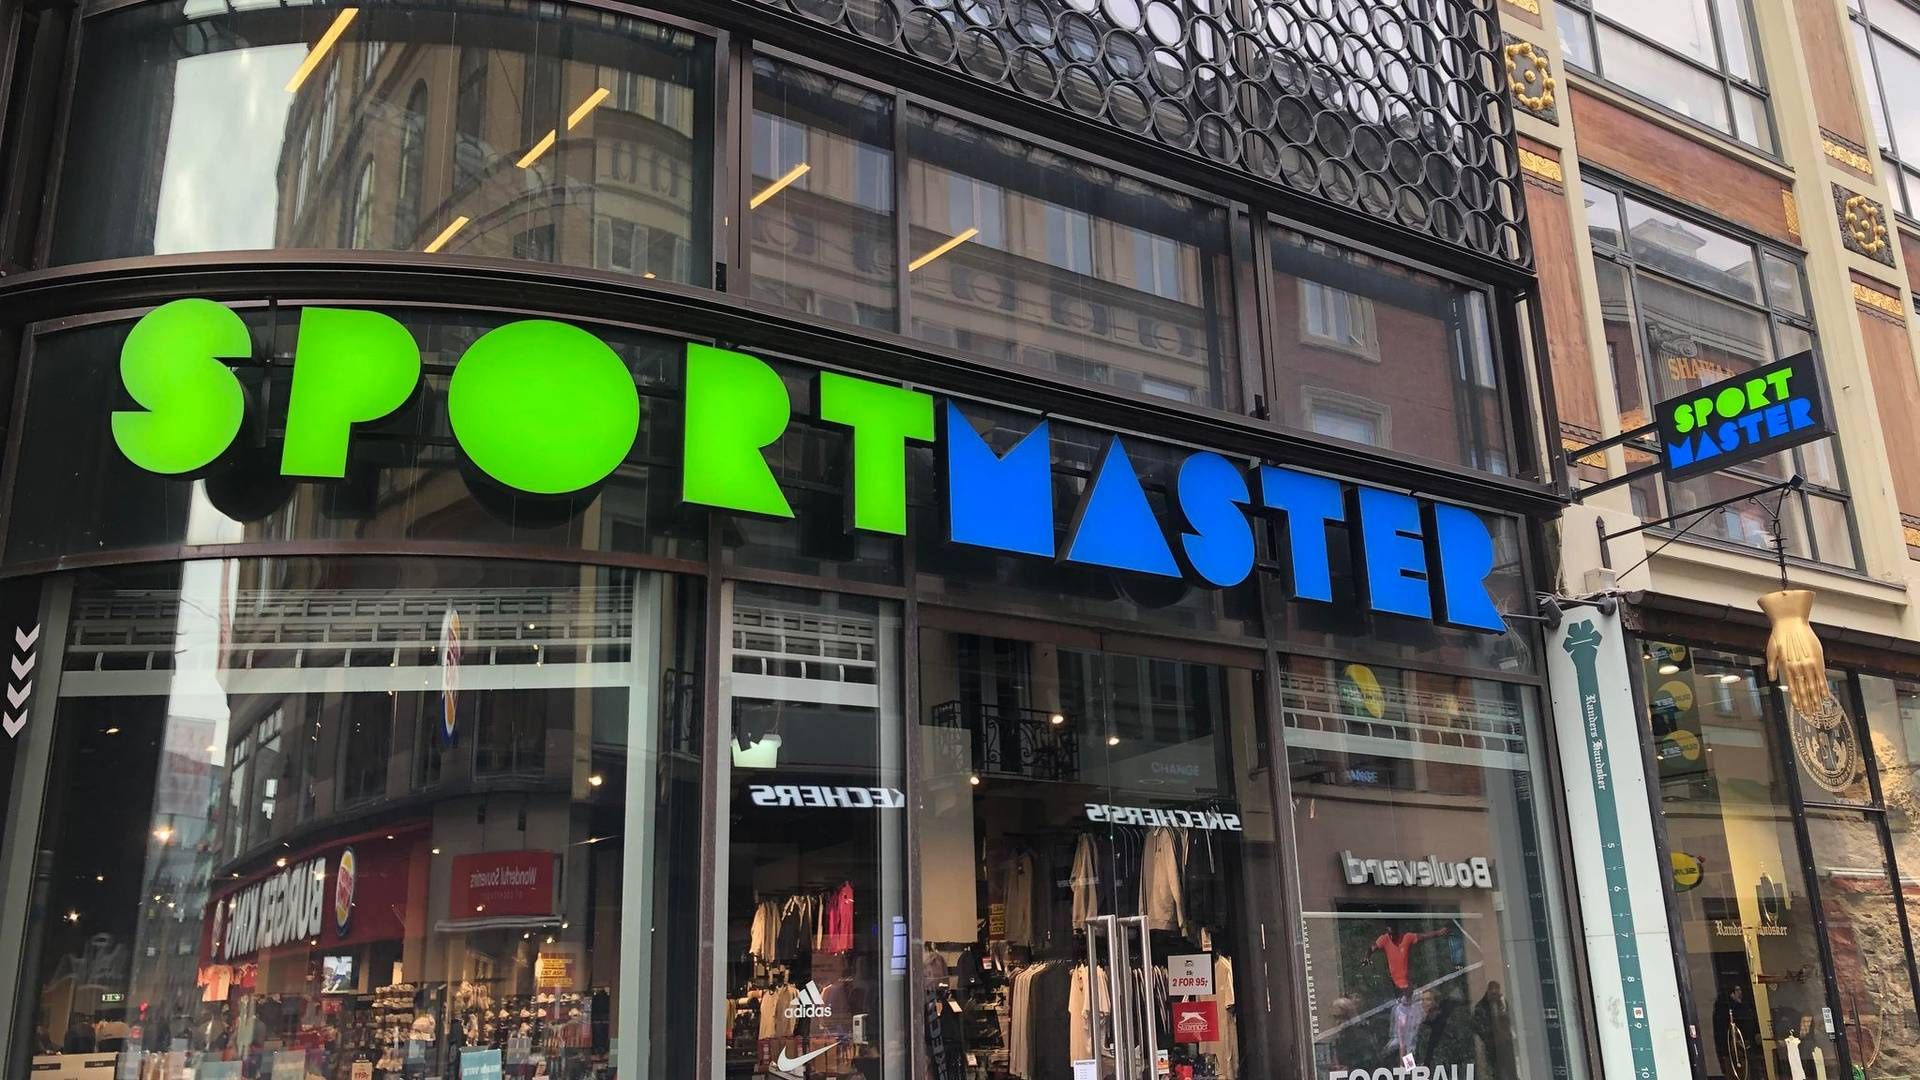 Sportmaster er en del af en igangværende retssag mod Obi Sport, der står bag Intersport-butikkerne i Danmark. Retssagens udfald kan få stor betydning for fremtidens udtryk på førstnævntes butikker. | Foto: Alexander Thorup/detailwatch